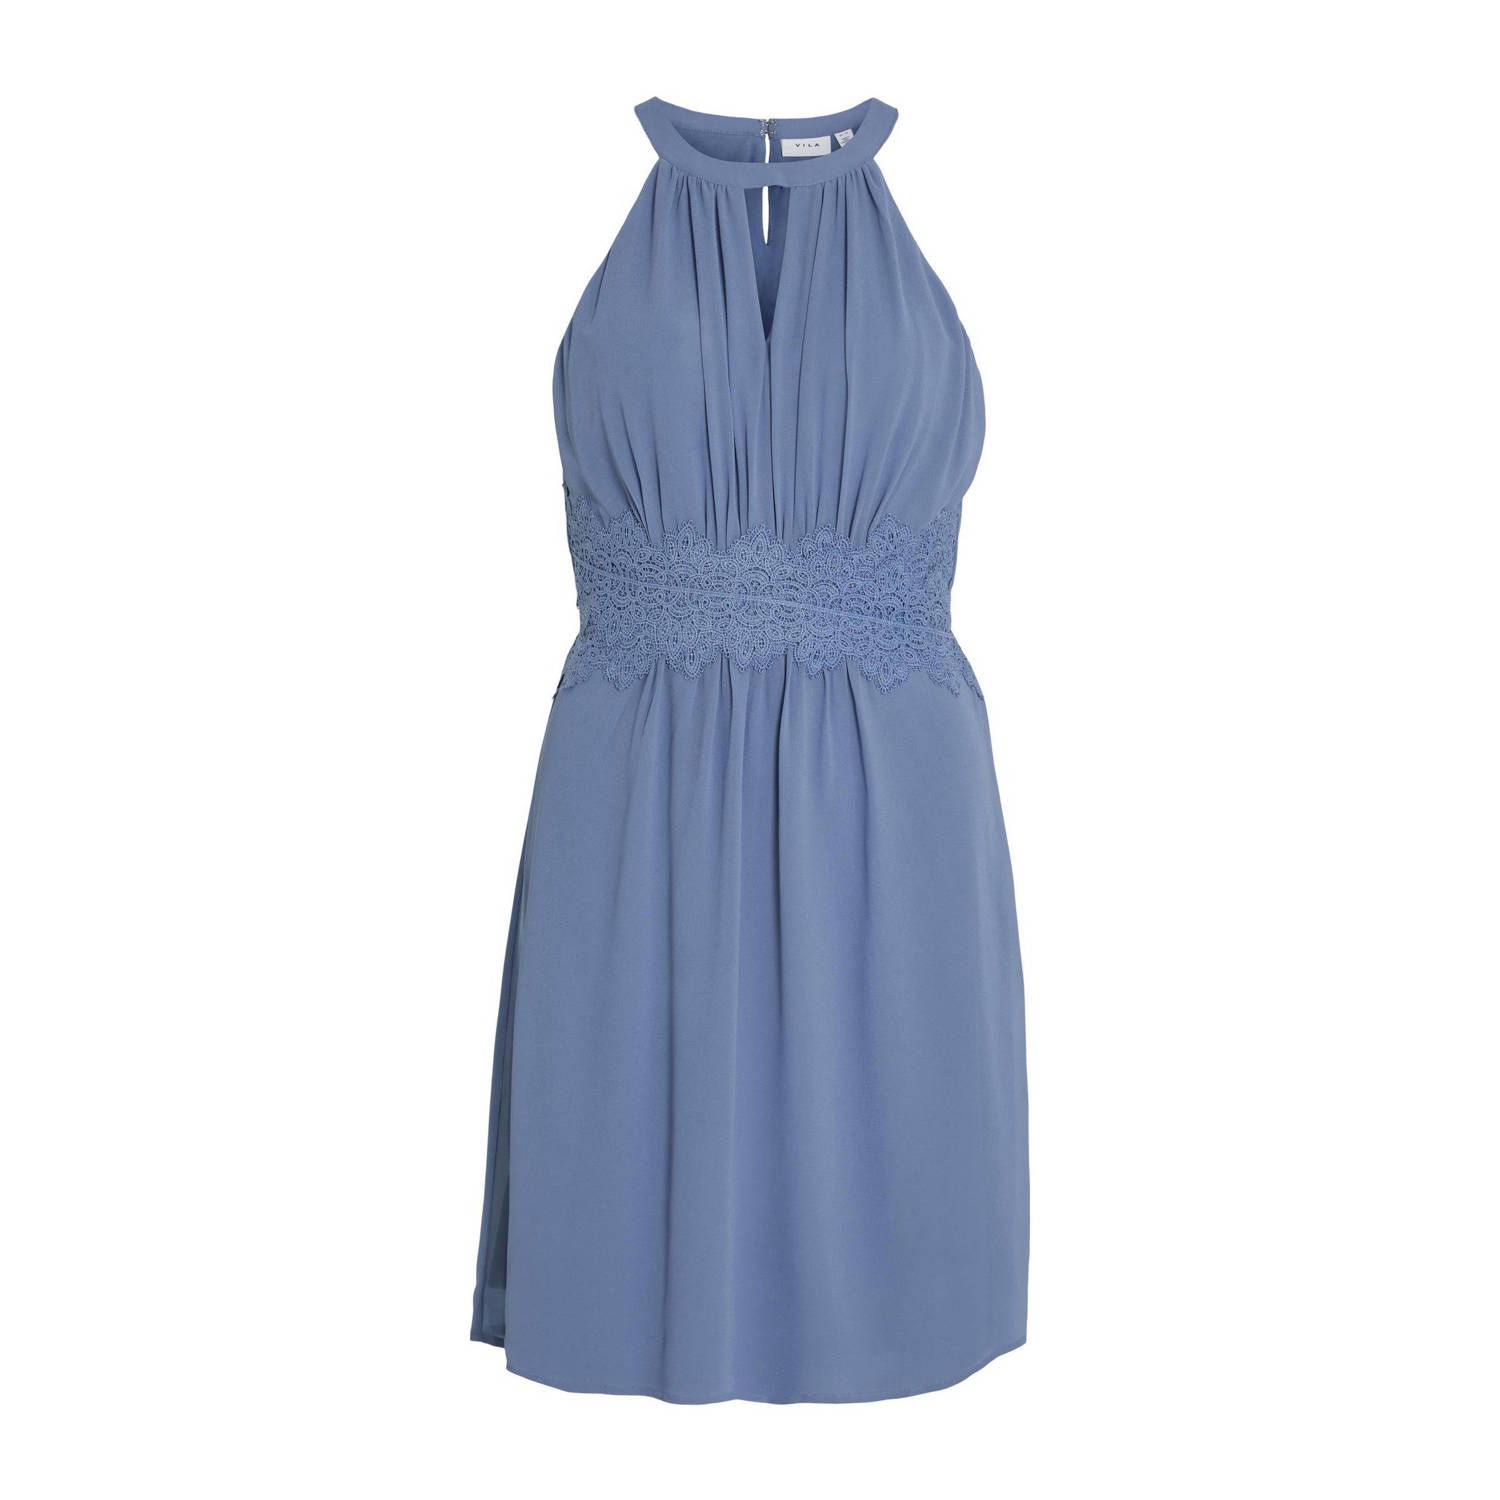 VILA A-lijn jurk VIMILINA blauw